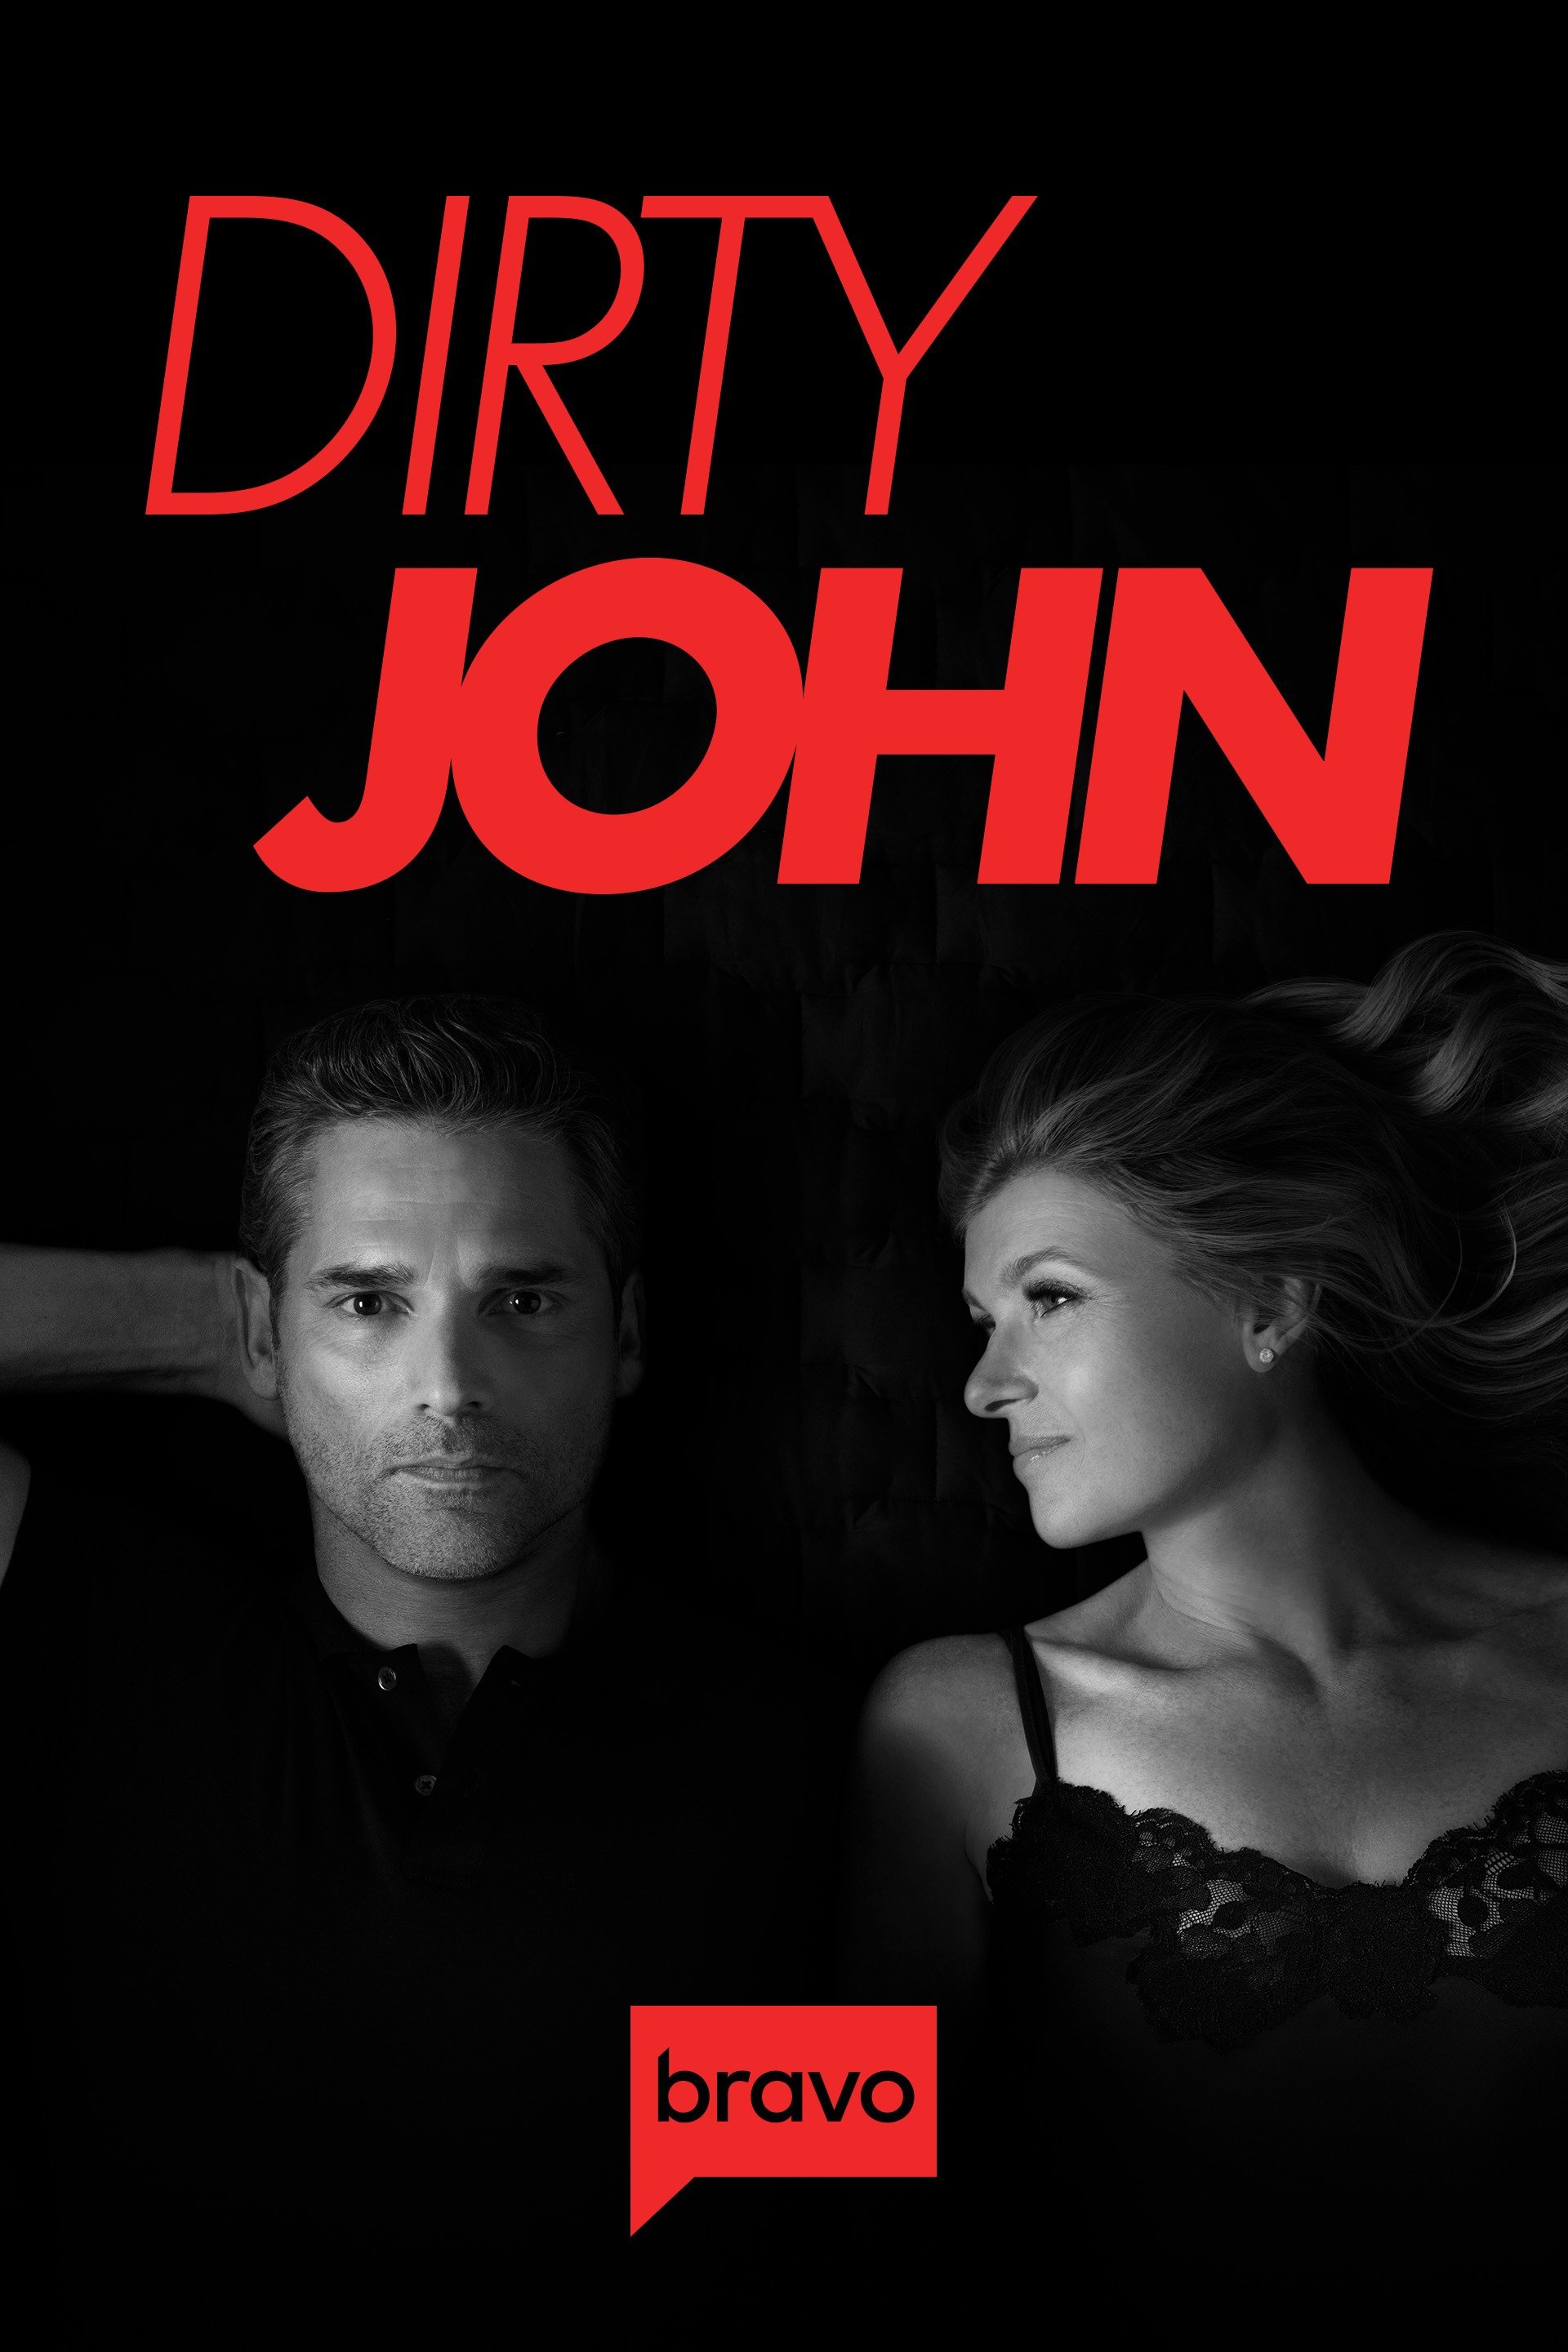 Dirty John 2018 S01 Dual Audio Hindi